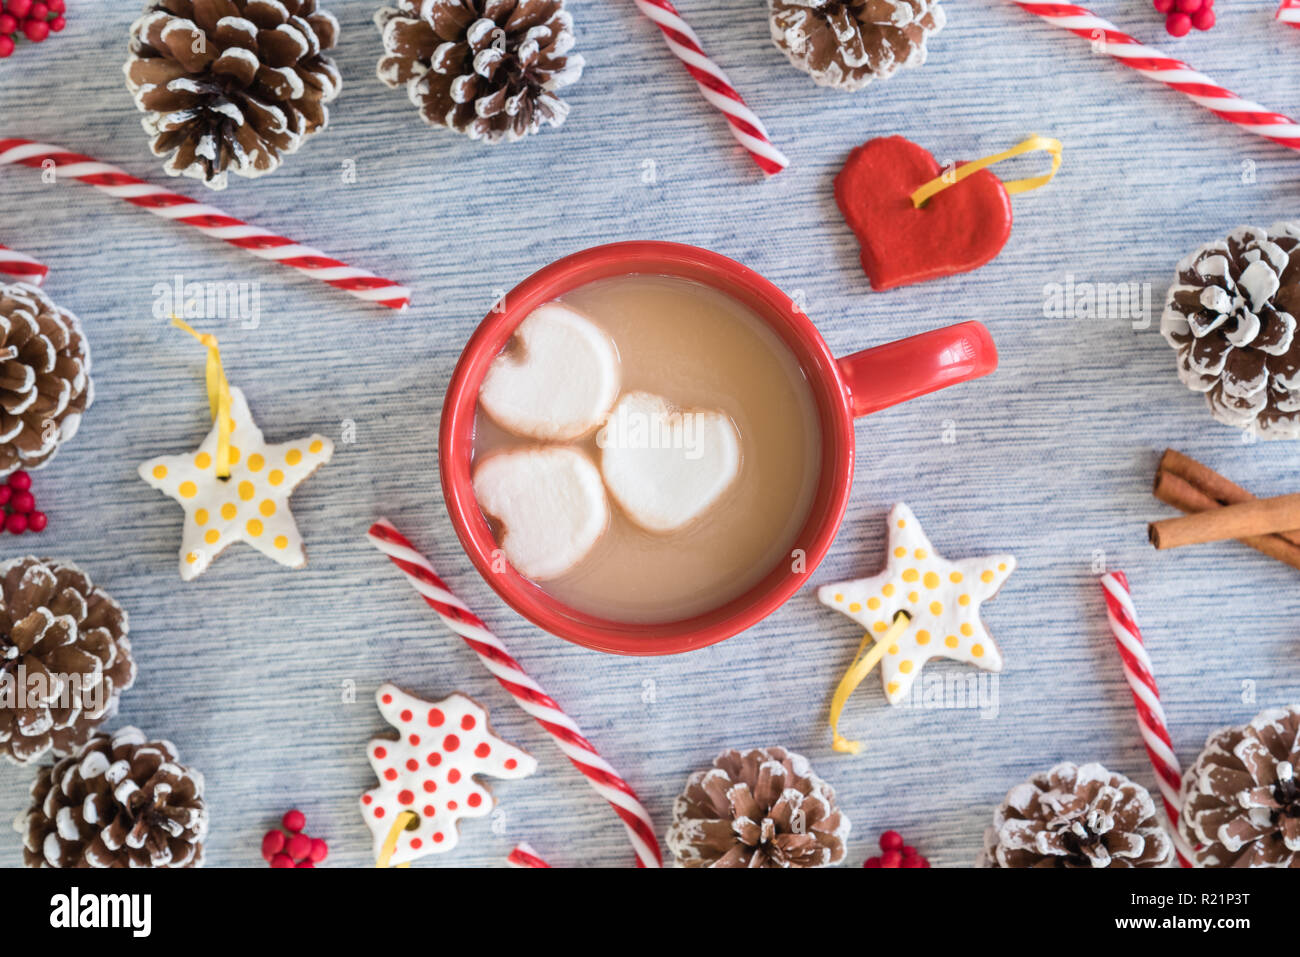 Chocolate caliente en taza roja con corazón malvaviscos rodeado de adornos artesanales, bastones de caramelo y piñas Foto de stock